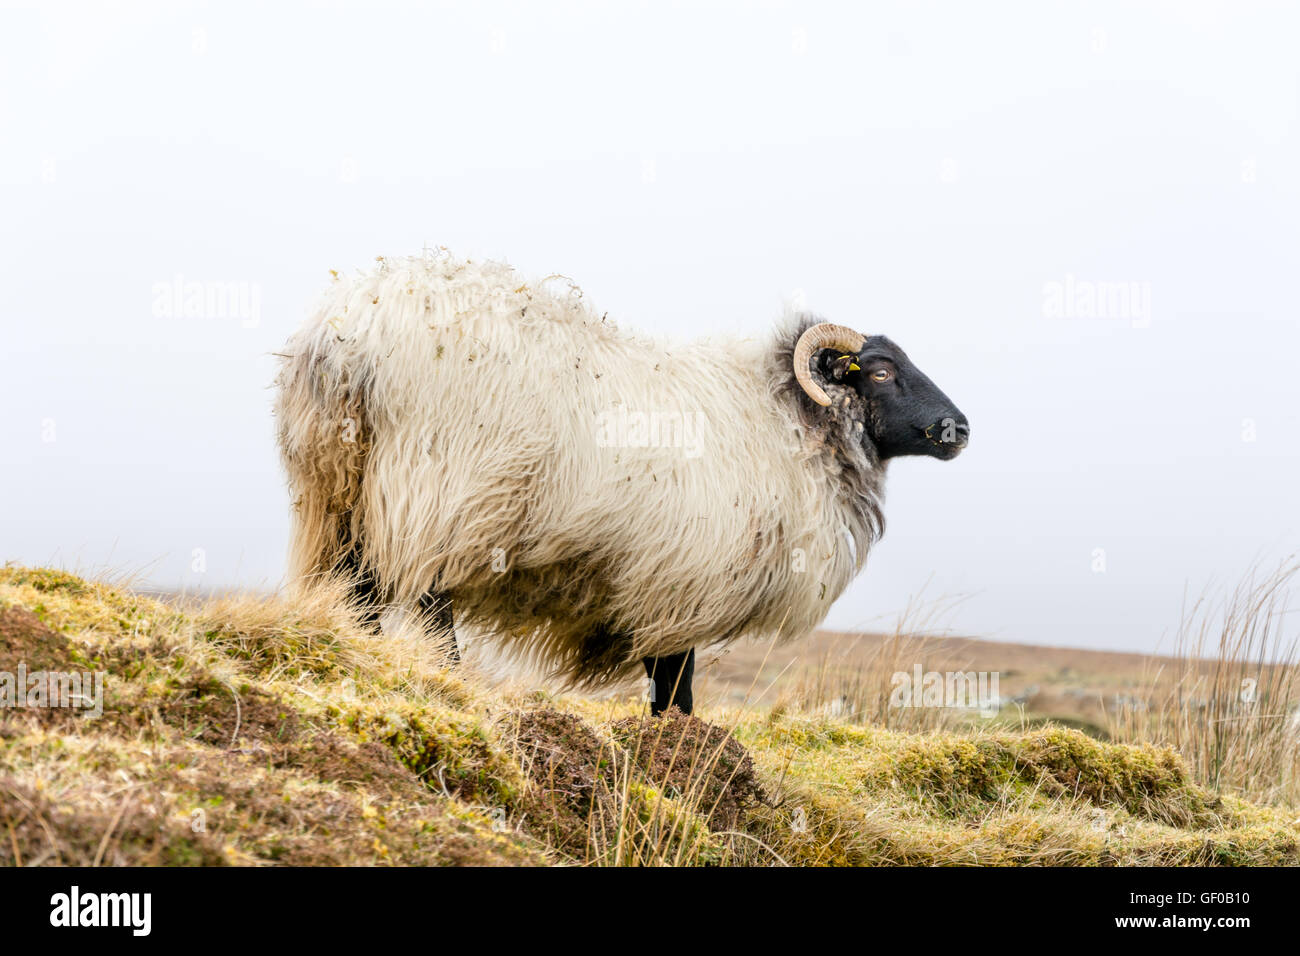 Diverses images de moutons, de l'Irlande Banque D'Images